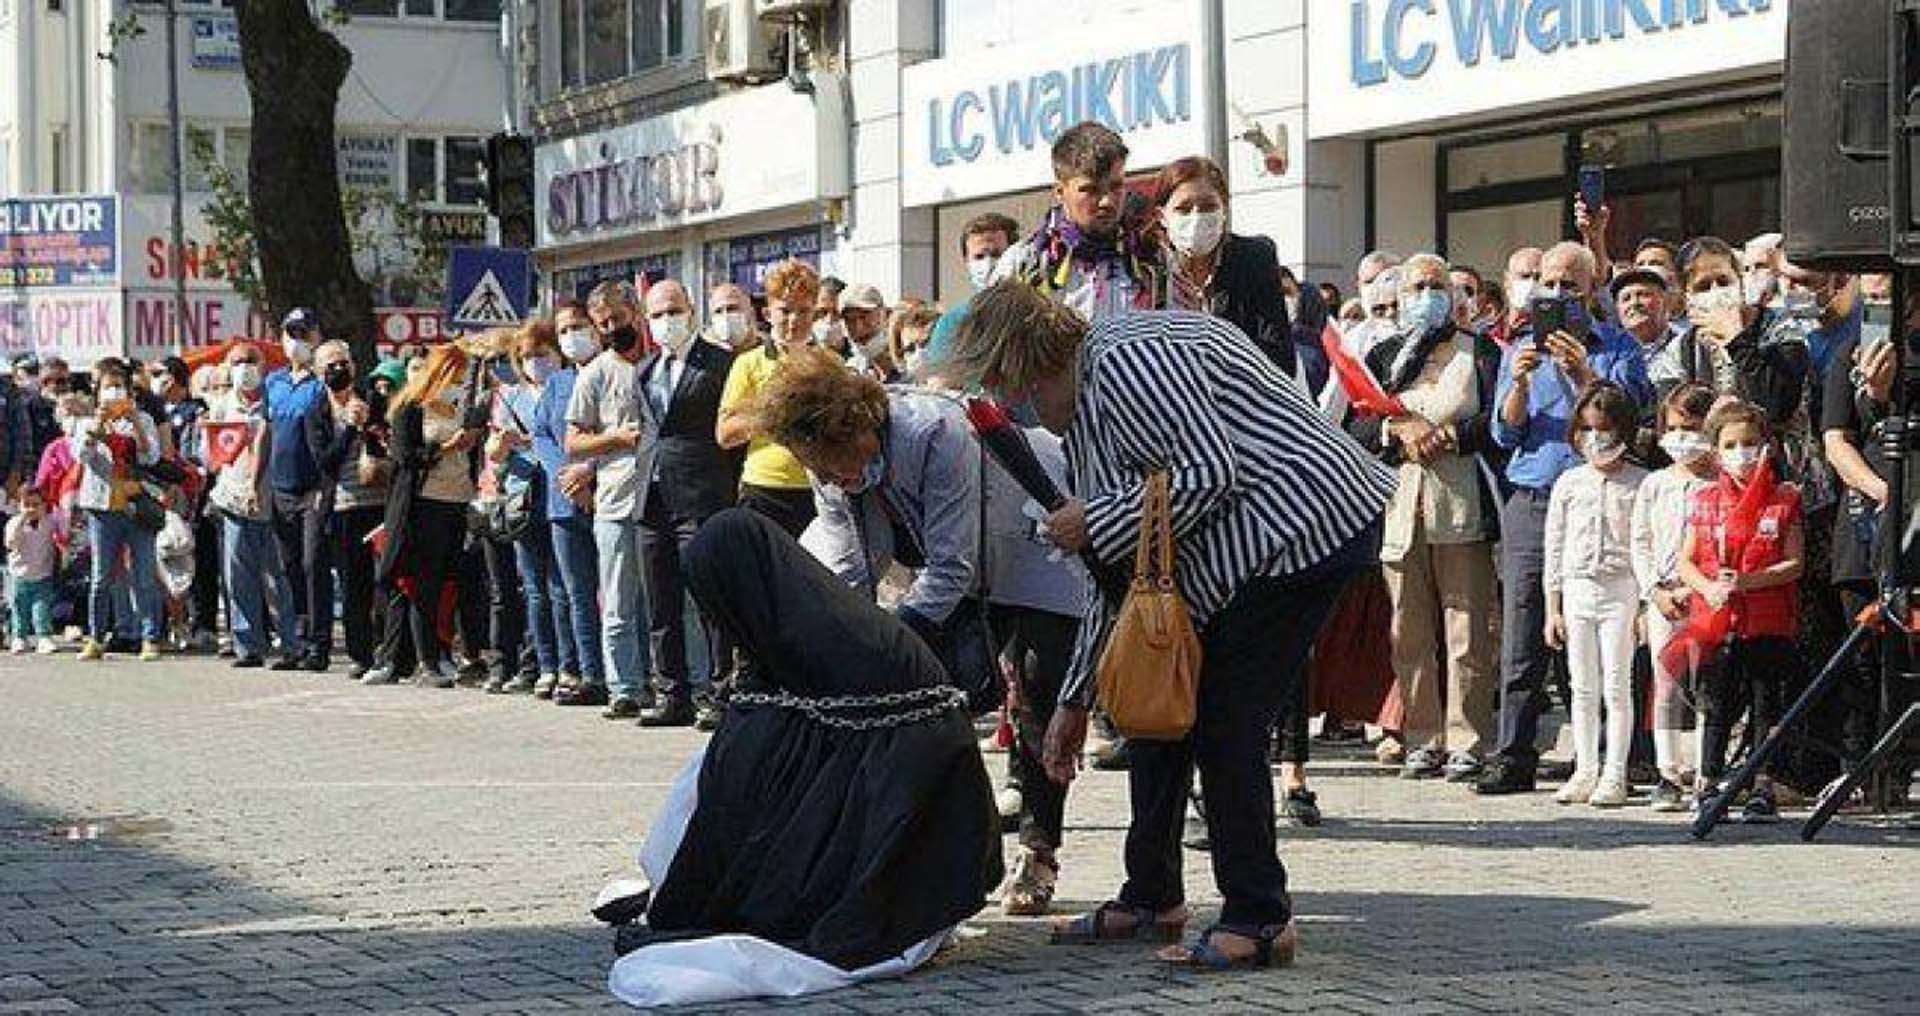 Balıkesir Edremit'te skandal görüntüler! Türk kadını çarşaf giydirip zincire vuruldu! Kaymakam jet hızıyla görevden alındı 